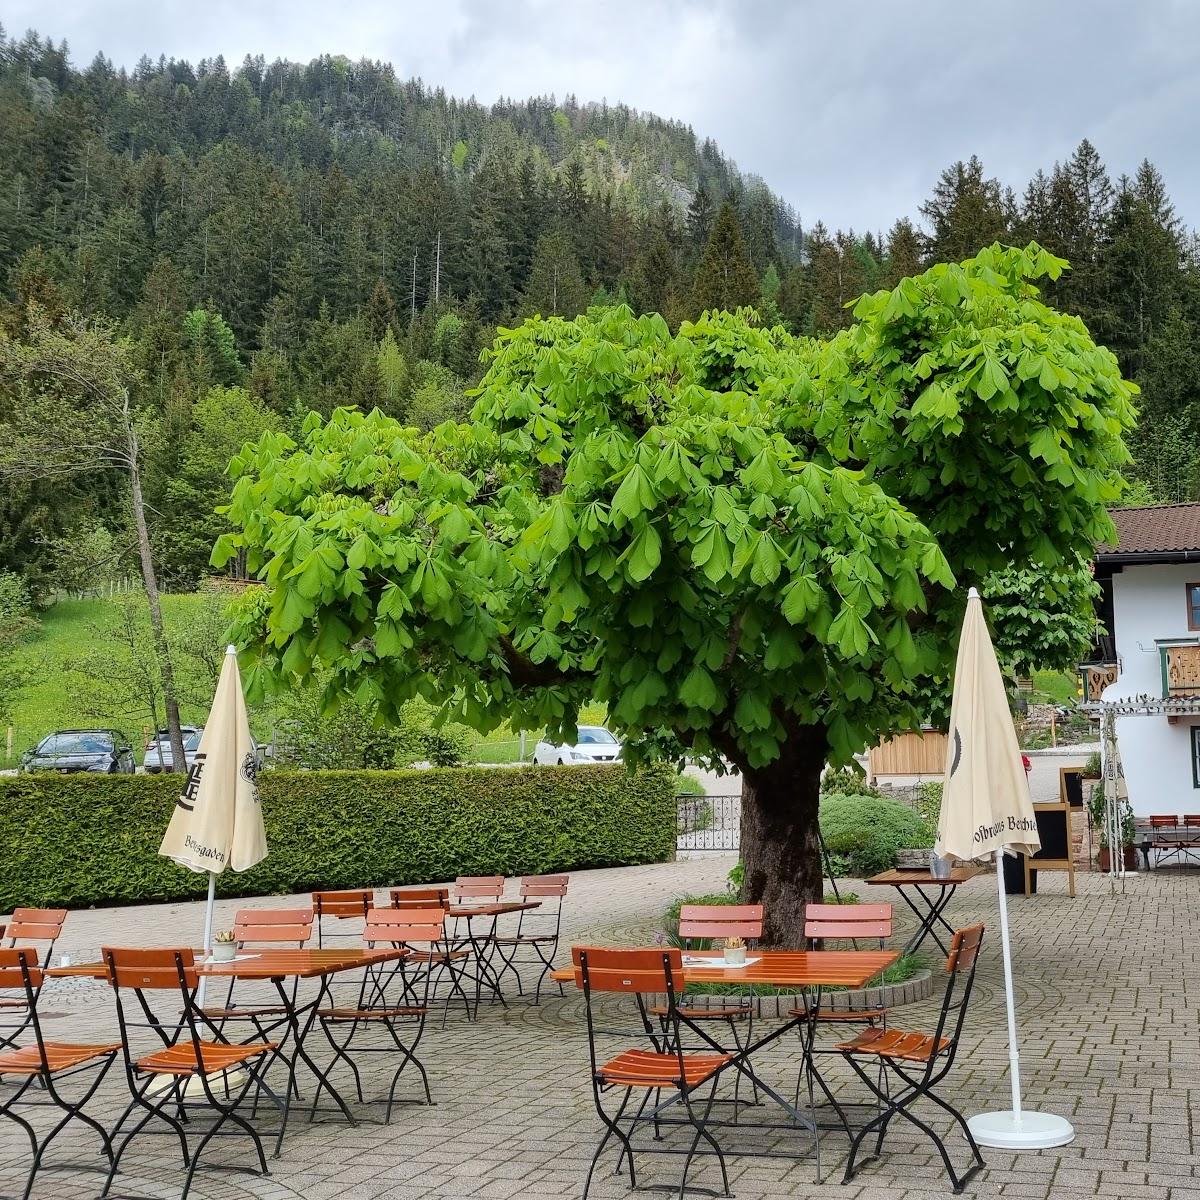 Restaurant "Pension + GF Restaurant Zipfhäusel" in Ramsau bei Berchtesgaden